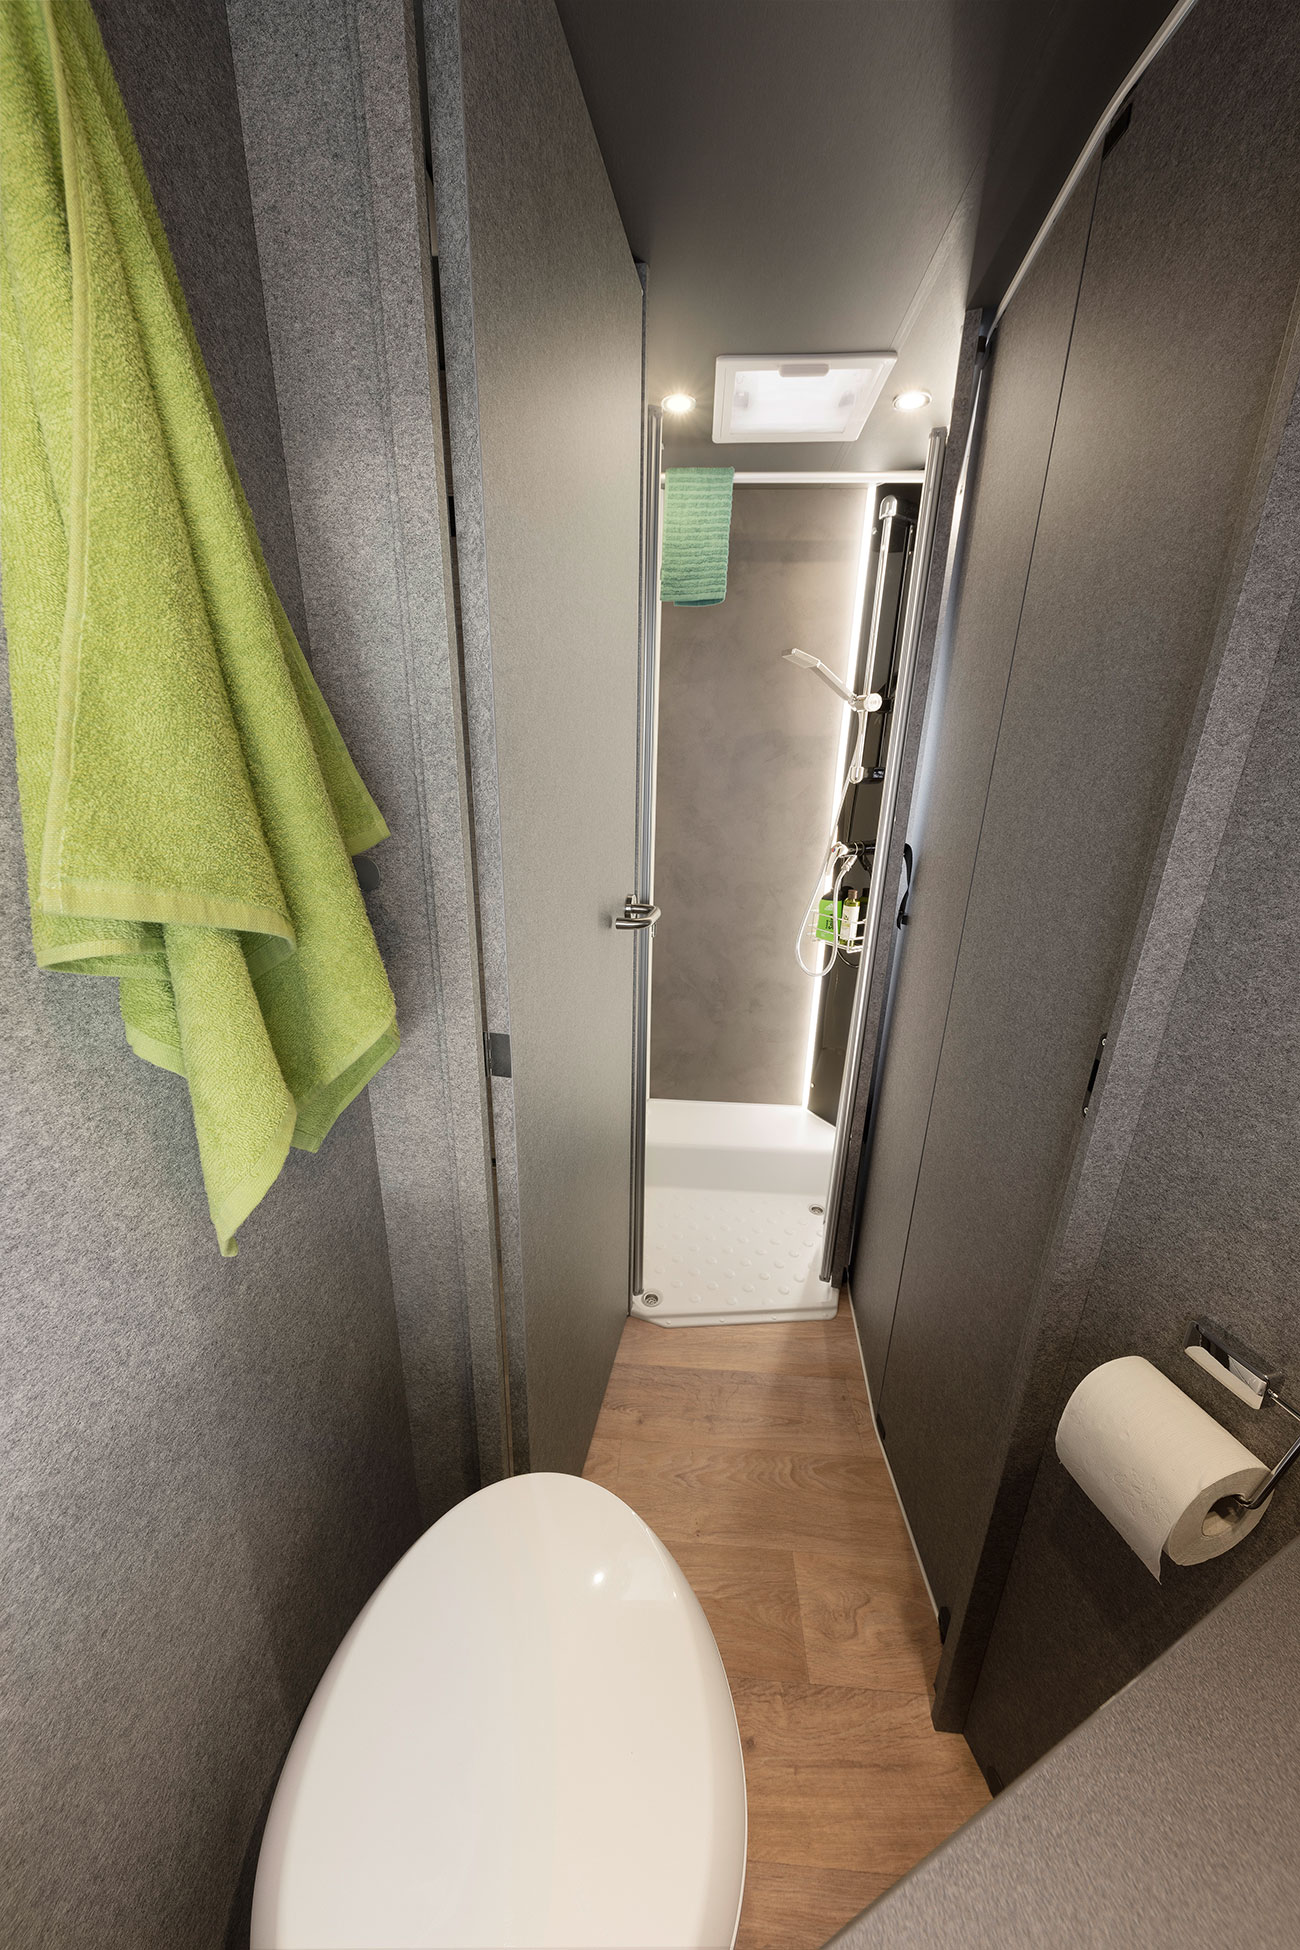 En smart lösning: Det reguljära badrummet (beroende på modell). Med badrumsdörren kan du stänga till genomgången till boytan. På så vis får du ett stort bad- och omklädningsrum för dig själv. En skjutdörr av trä skiljer av badrummet från sovrummet.